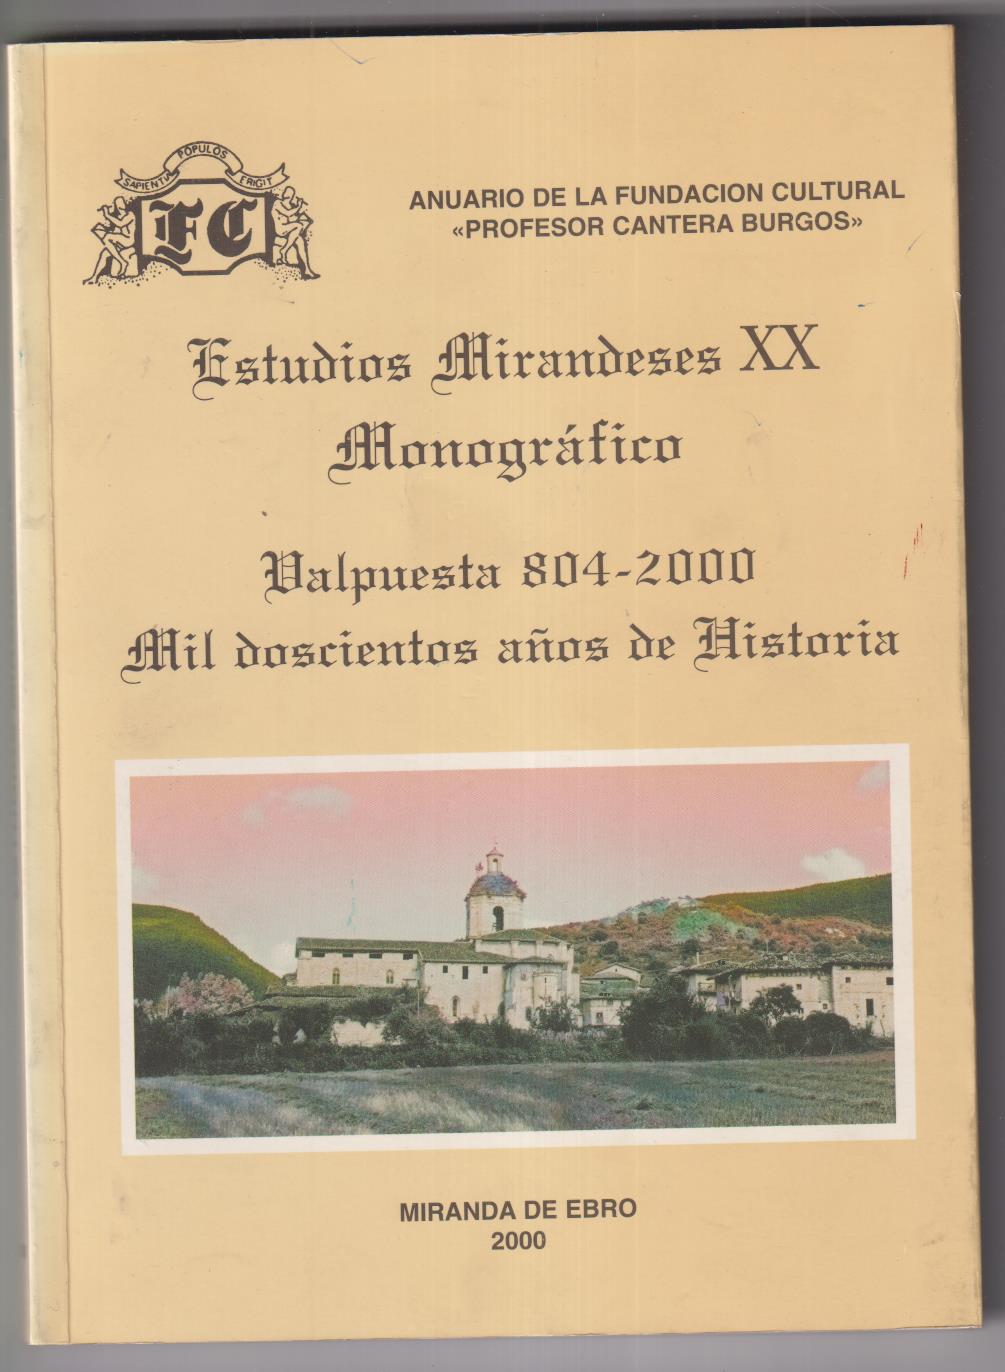 Estudios Mirandeses XX monográfico Valpuesta 804-2000, Mil doscientos Años de Histo-